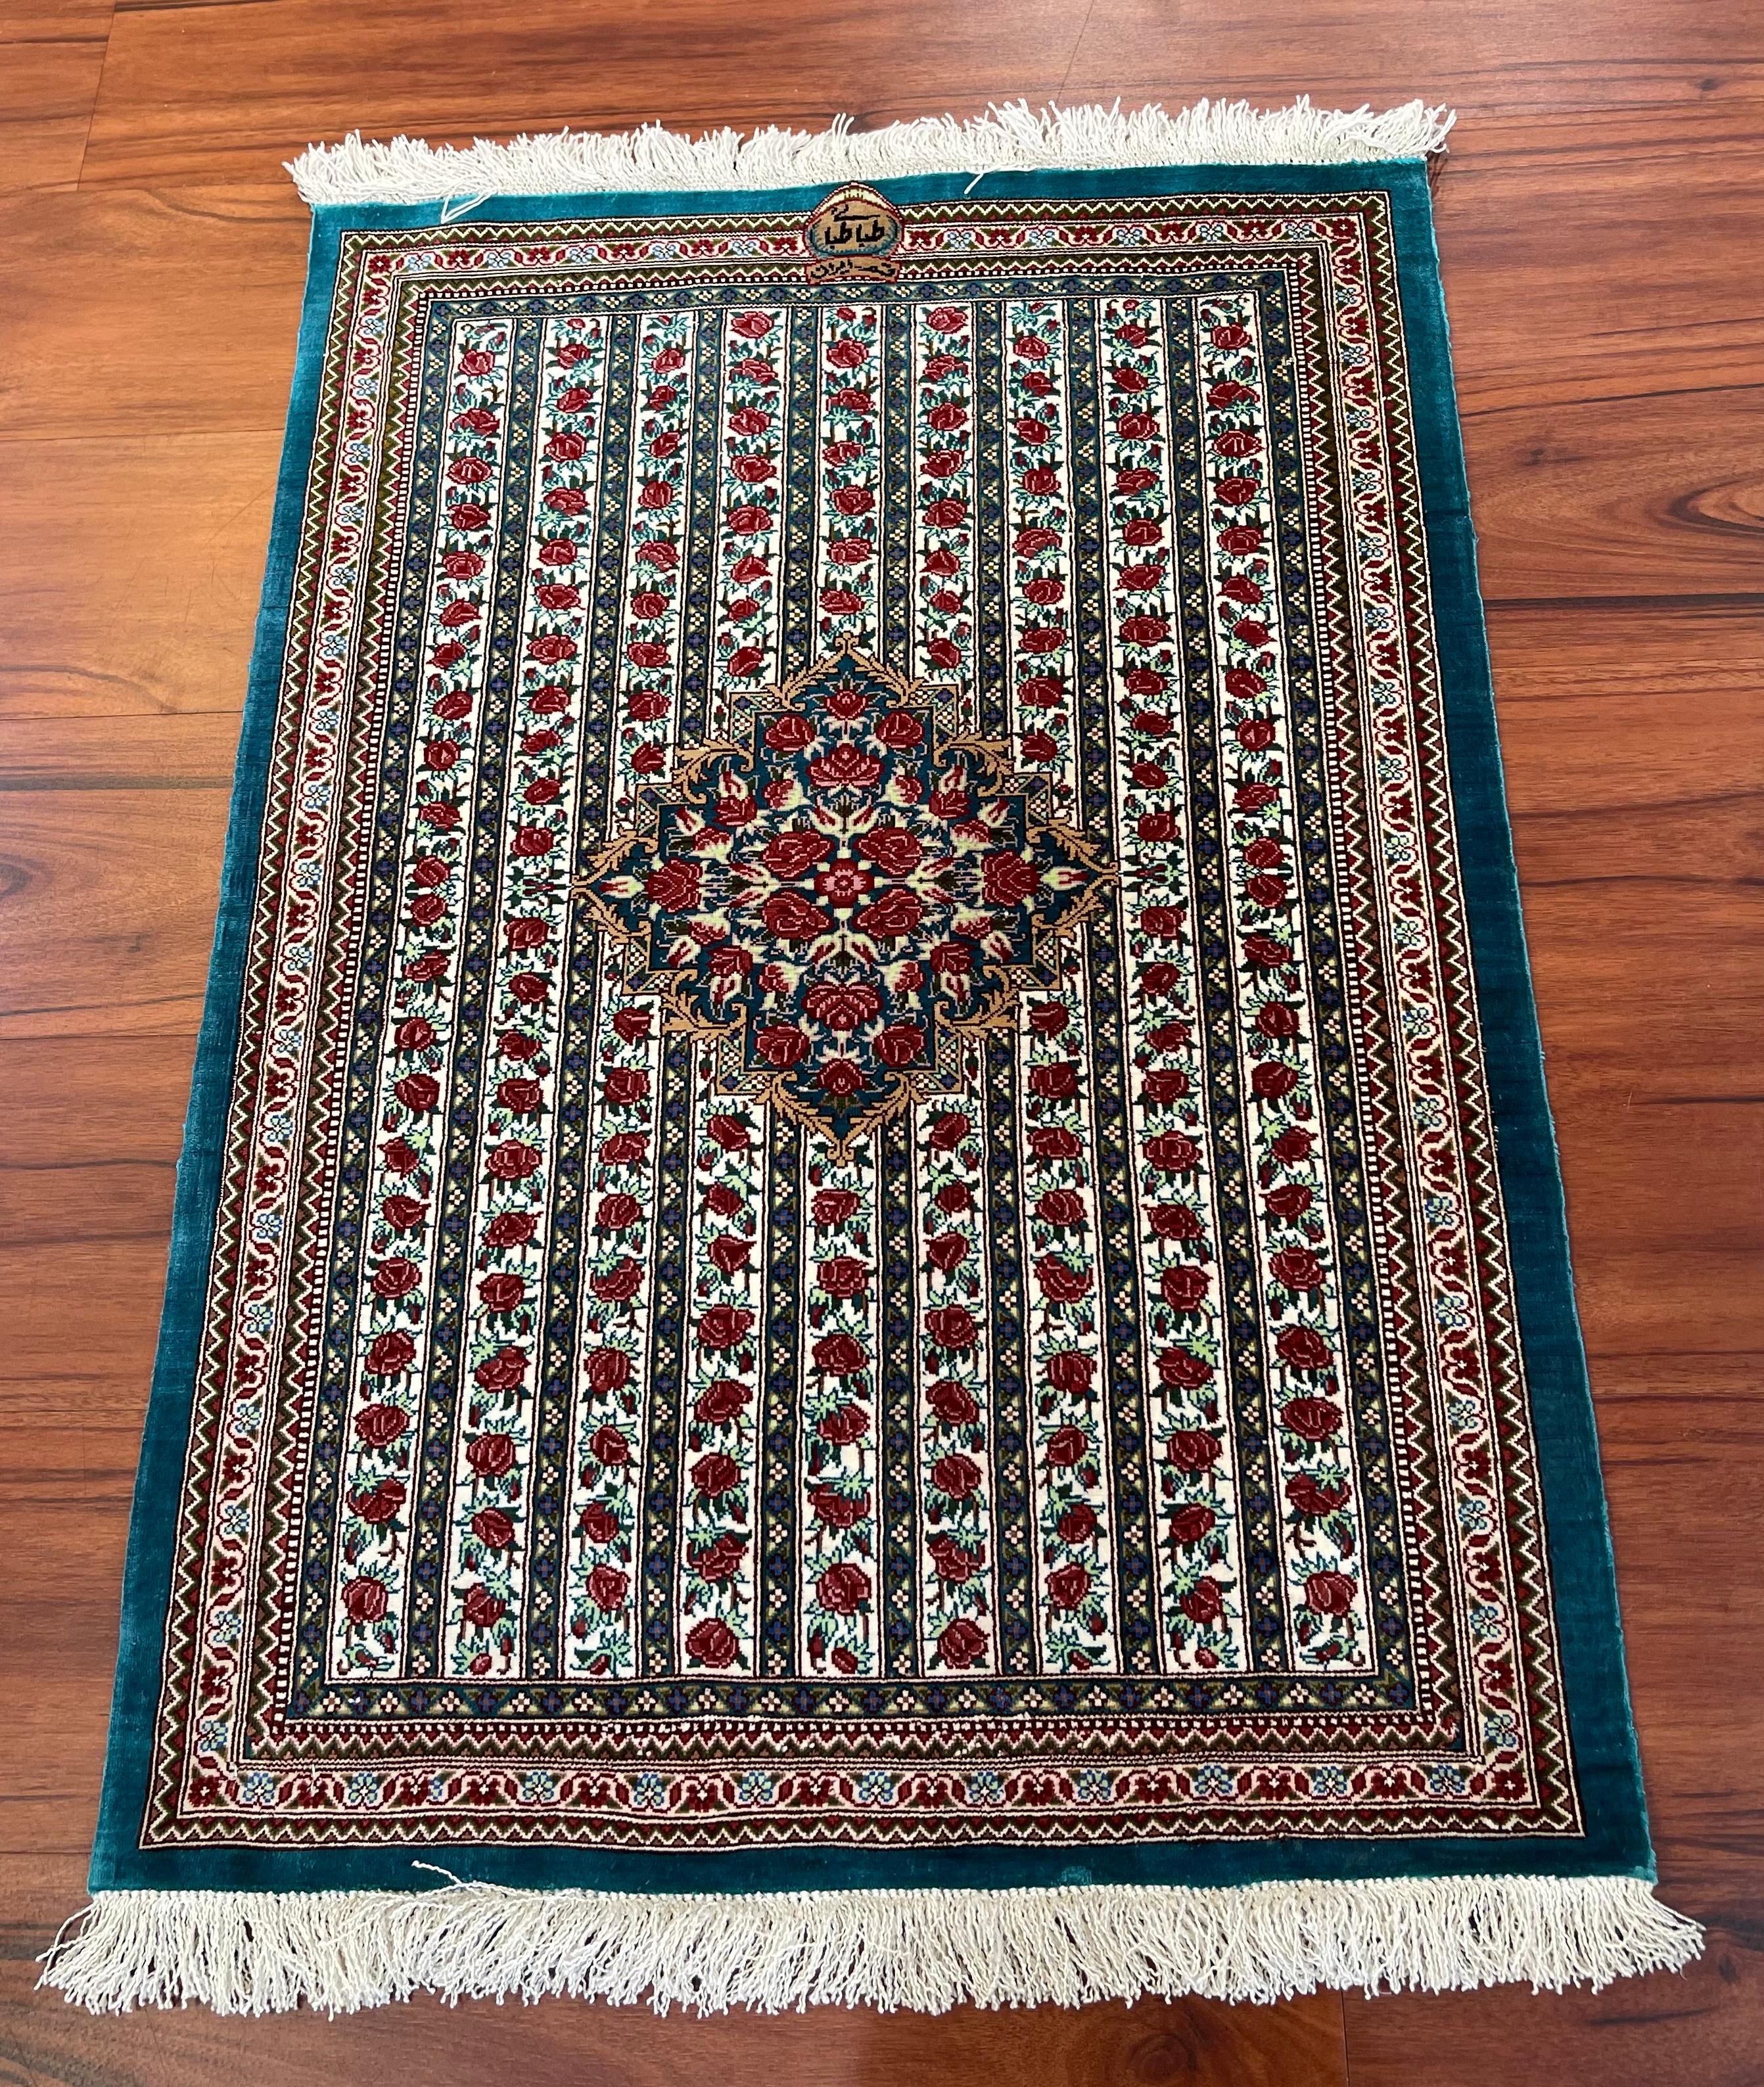 Un superbe tapis Qum en soie persane d'une extrême finesse. Ce magnifique tapis 100 % soie provient d'Iran et date de la fin du XXe siècle. Il est en excellent état. 